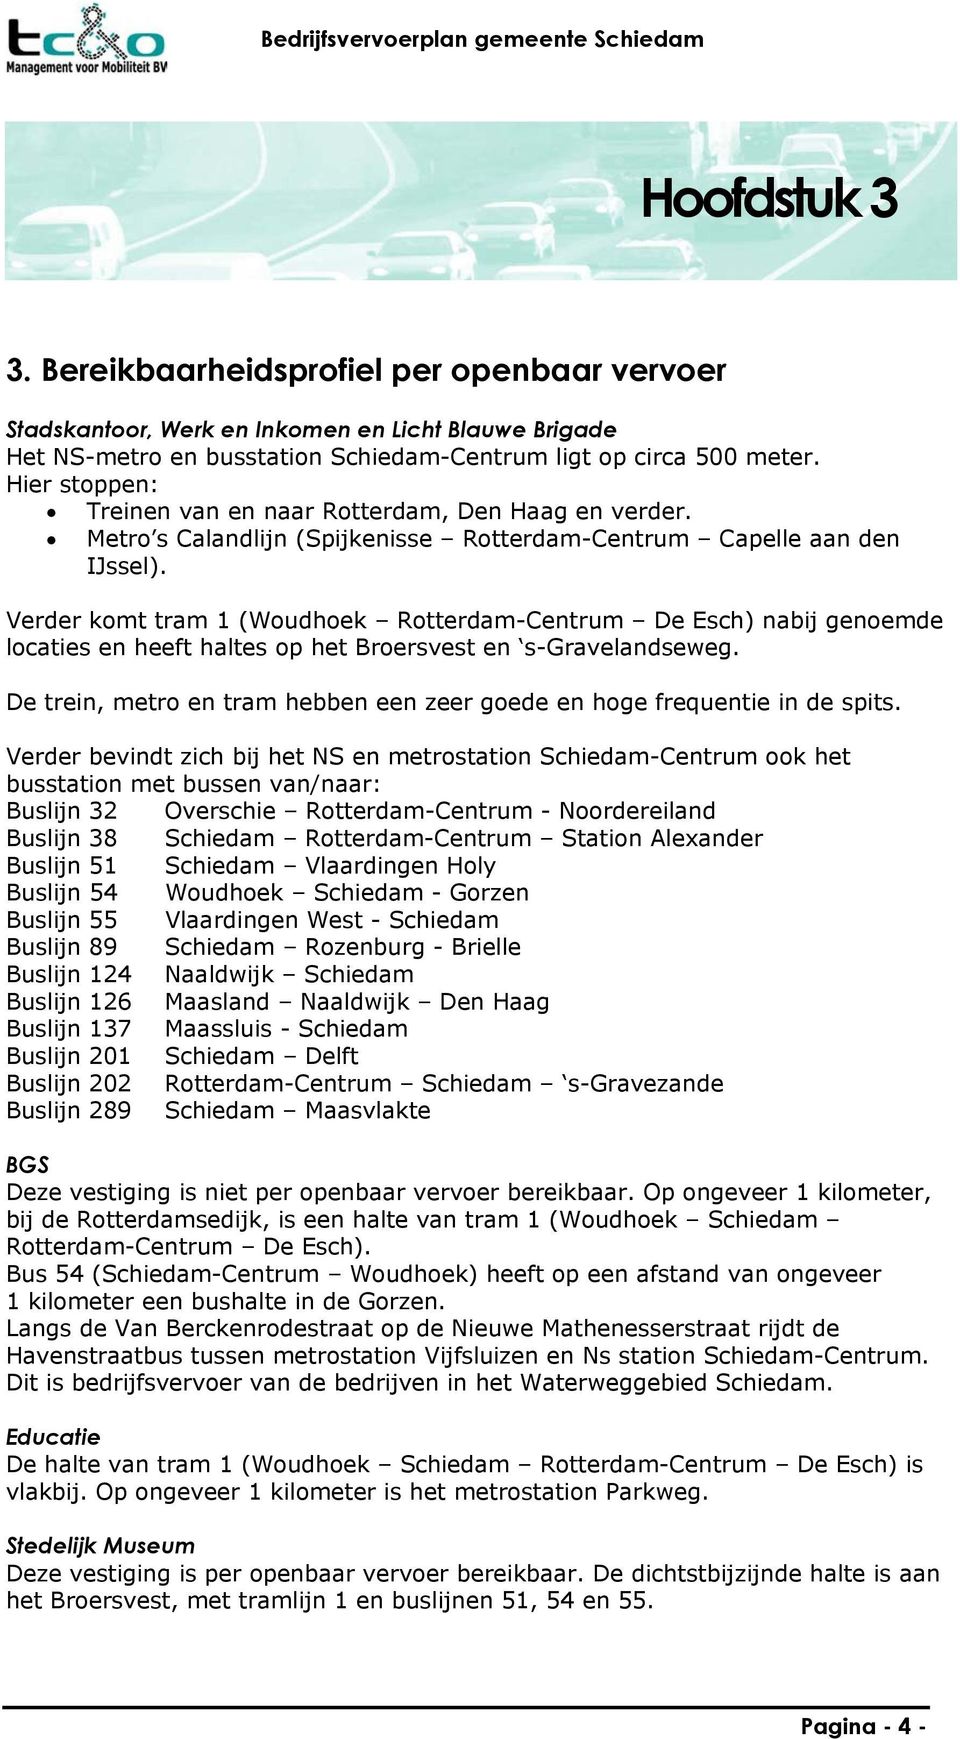 Verder komt tram 1 (Woudhoek Rotterdam-Centrum De Esch) nabij genoemde locaties en heeft haltes op het Broersvest en s-gravelandseweg.